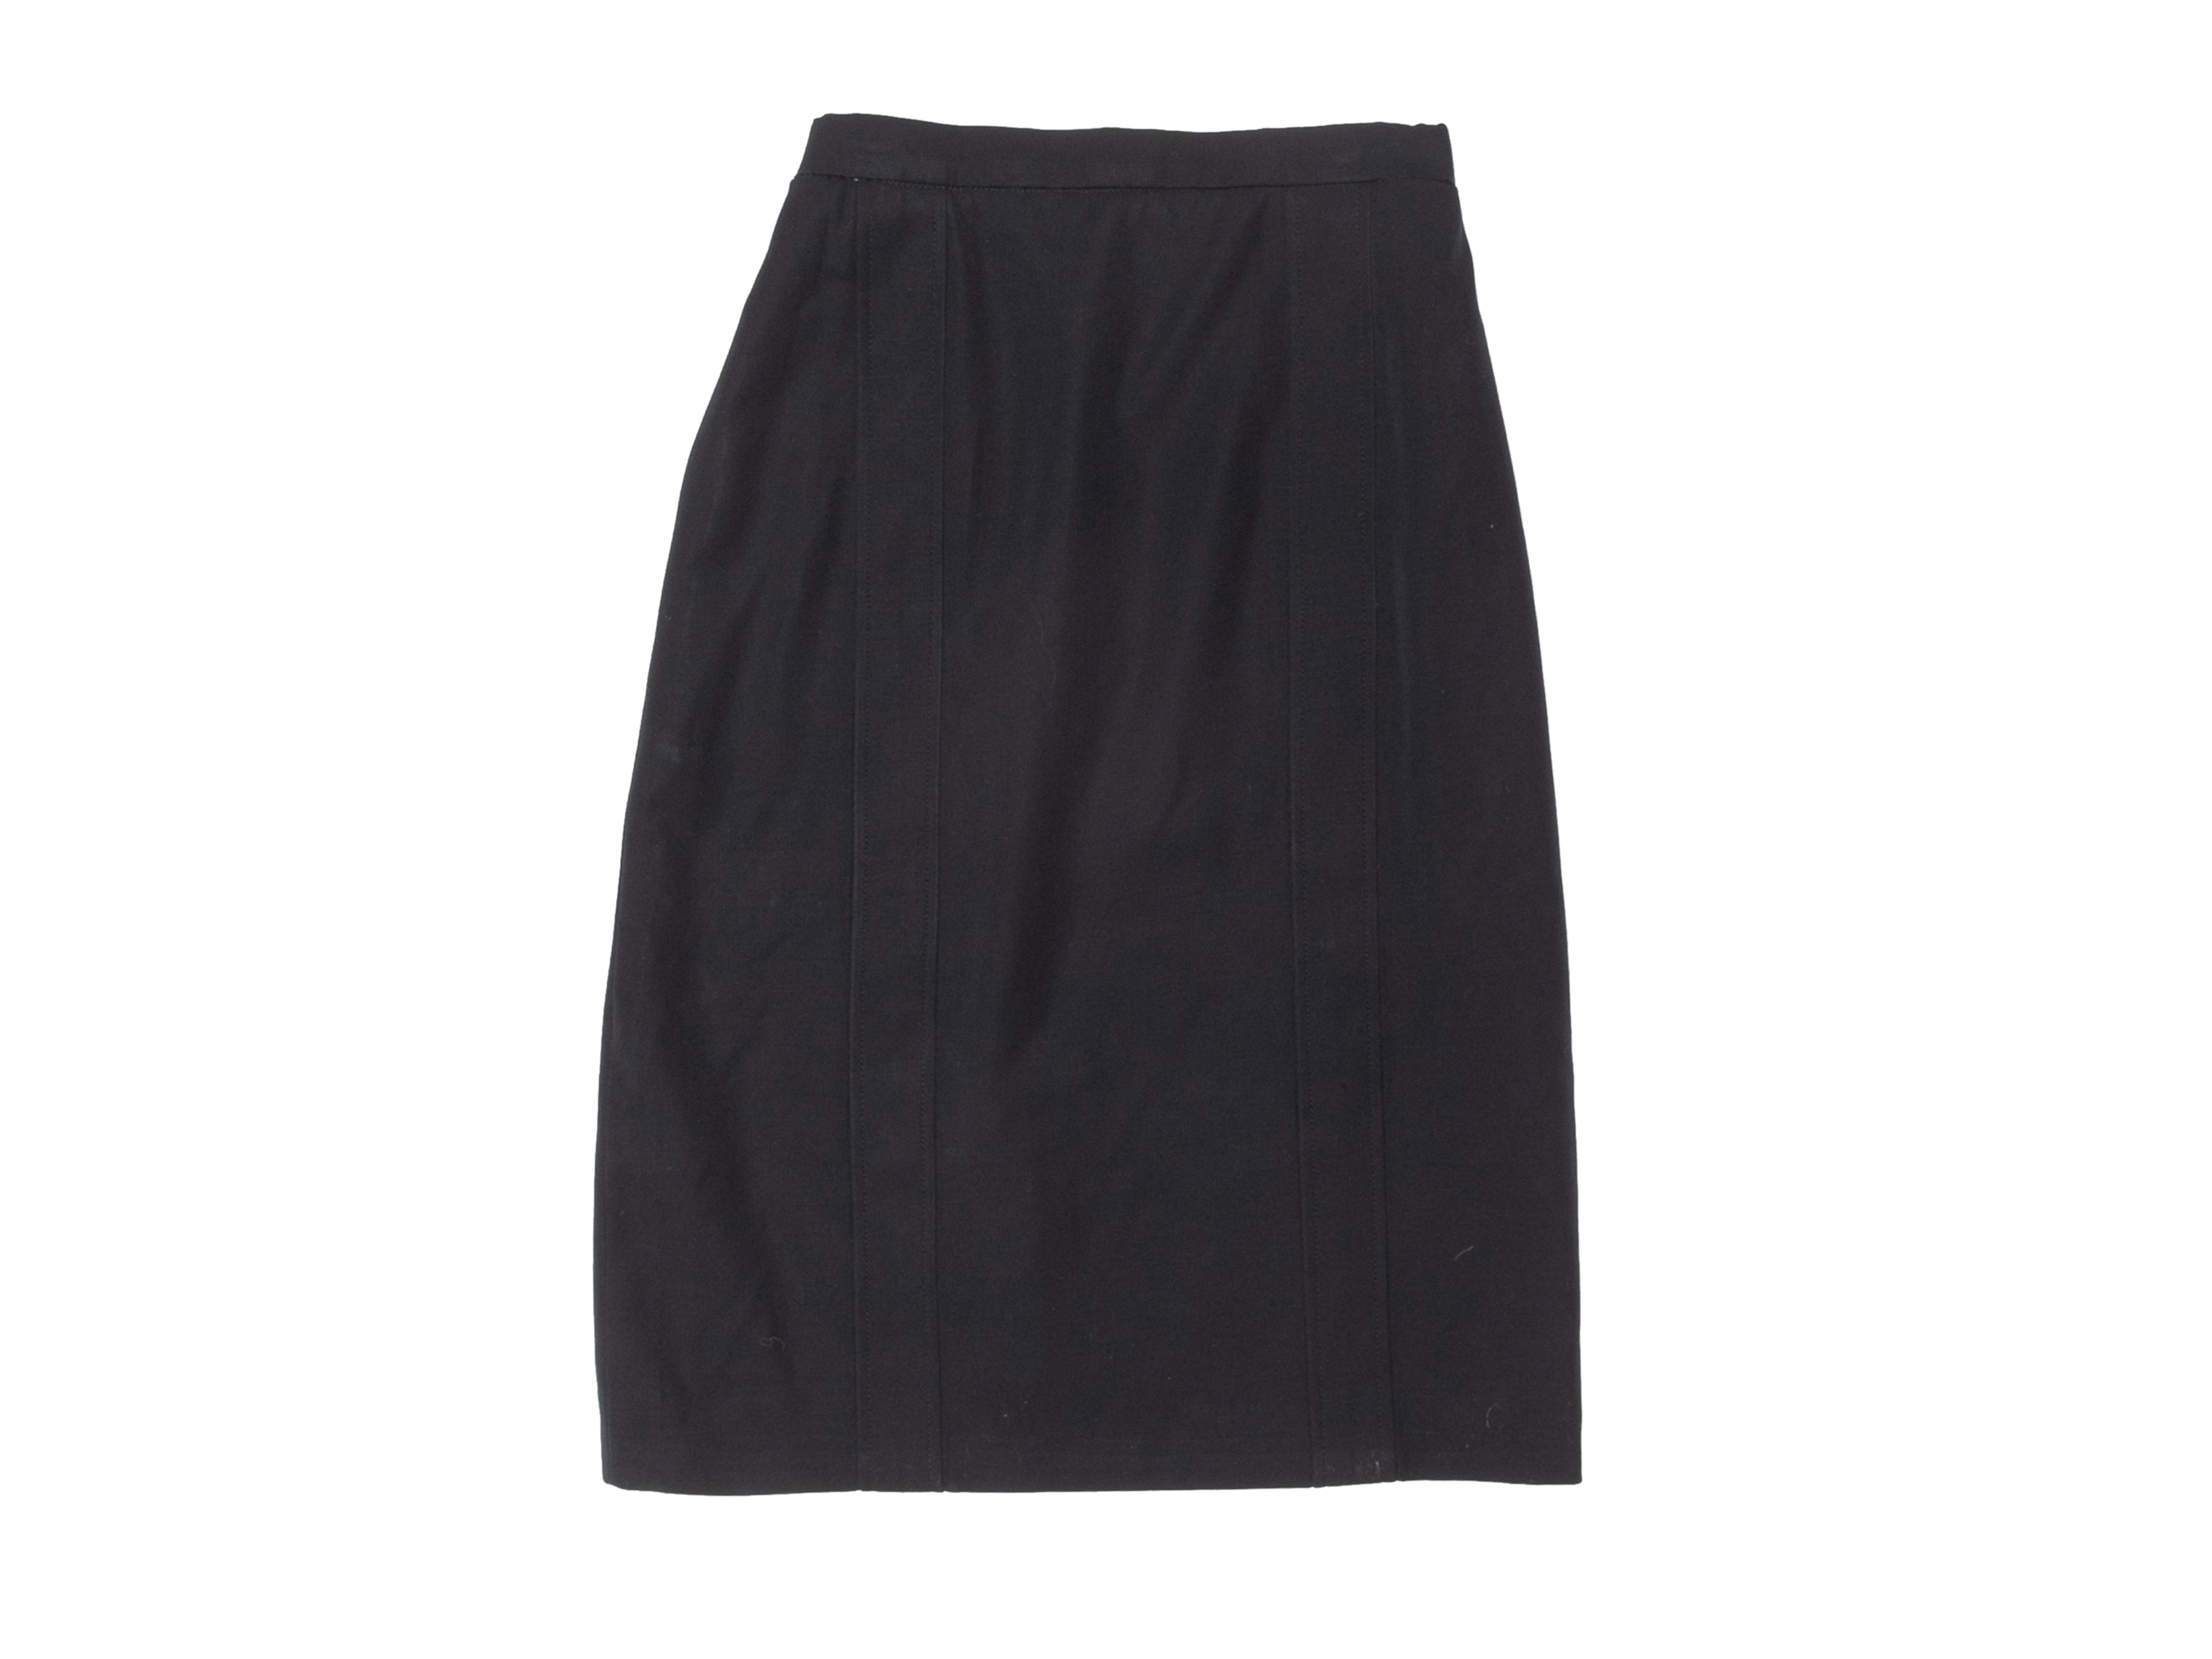 Vintage Dark Navy Chanel Boutique Wool Skirt Size 4 - Designer Revival